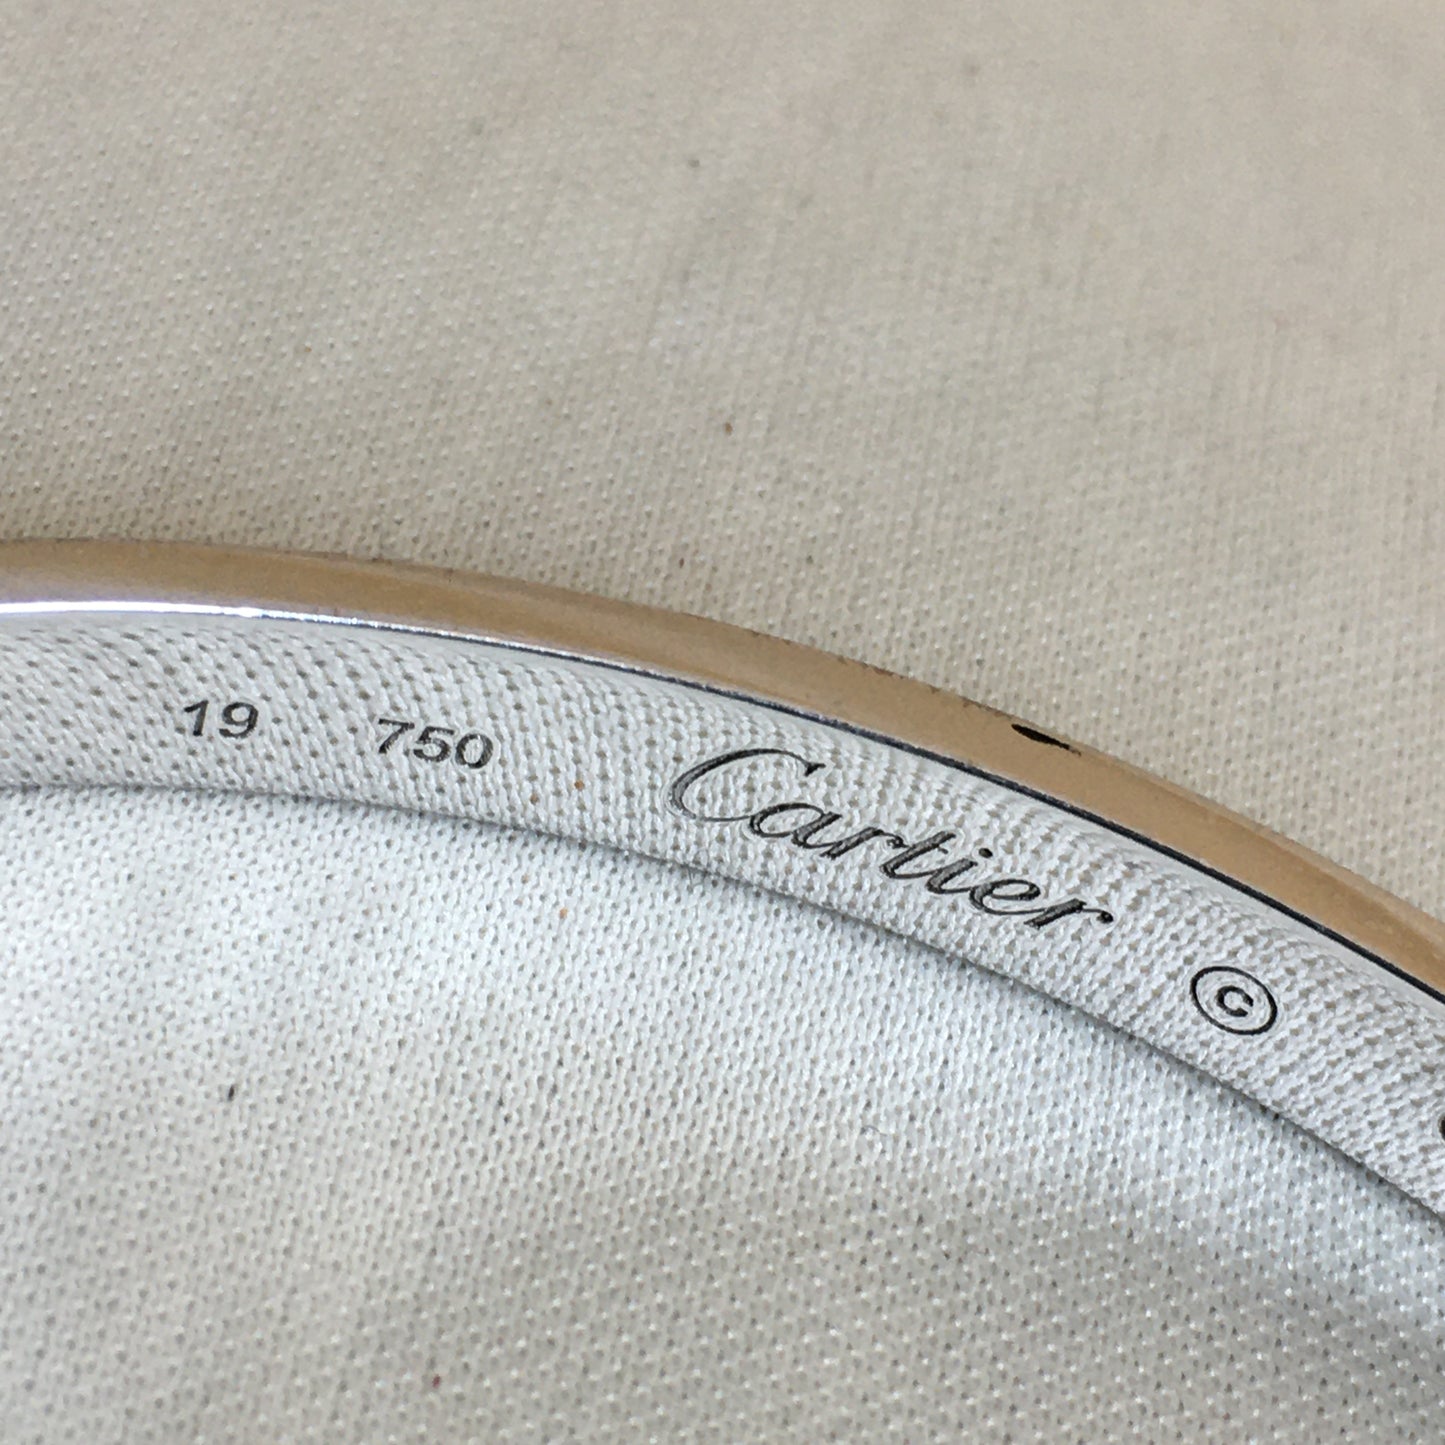 Cartier White Gold Love Bangle #19 (Not original screwdriver include) Sku# 61710